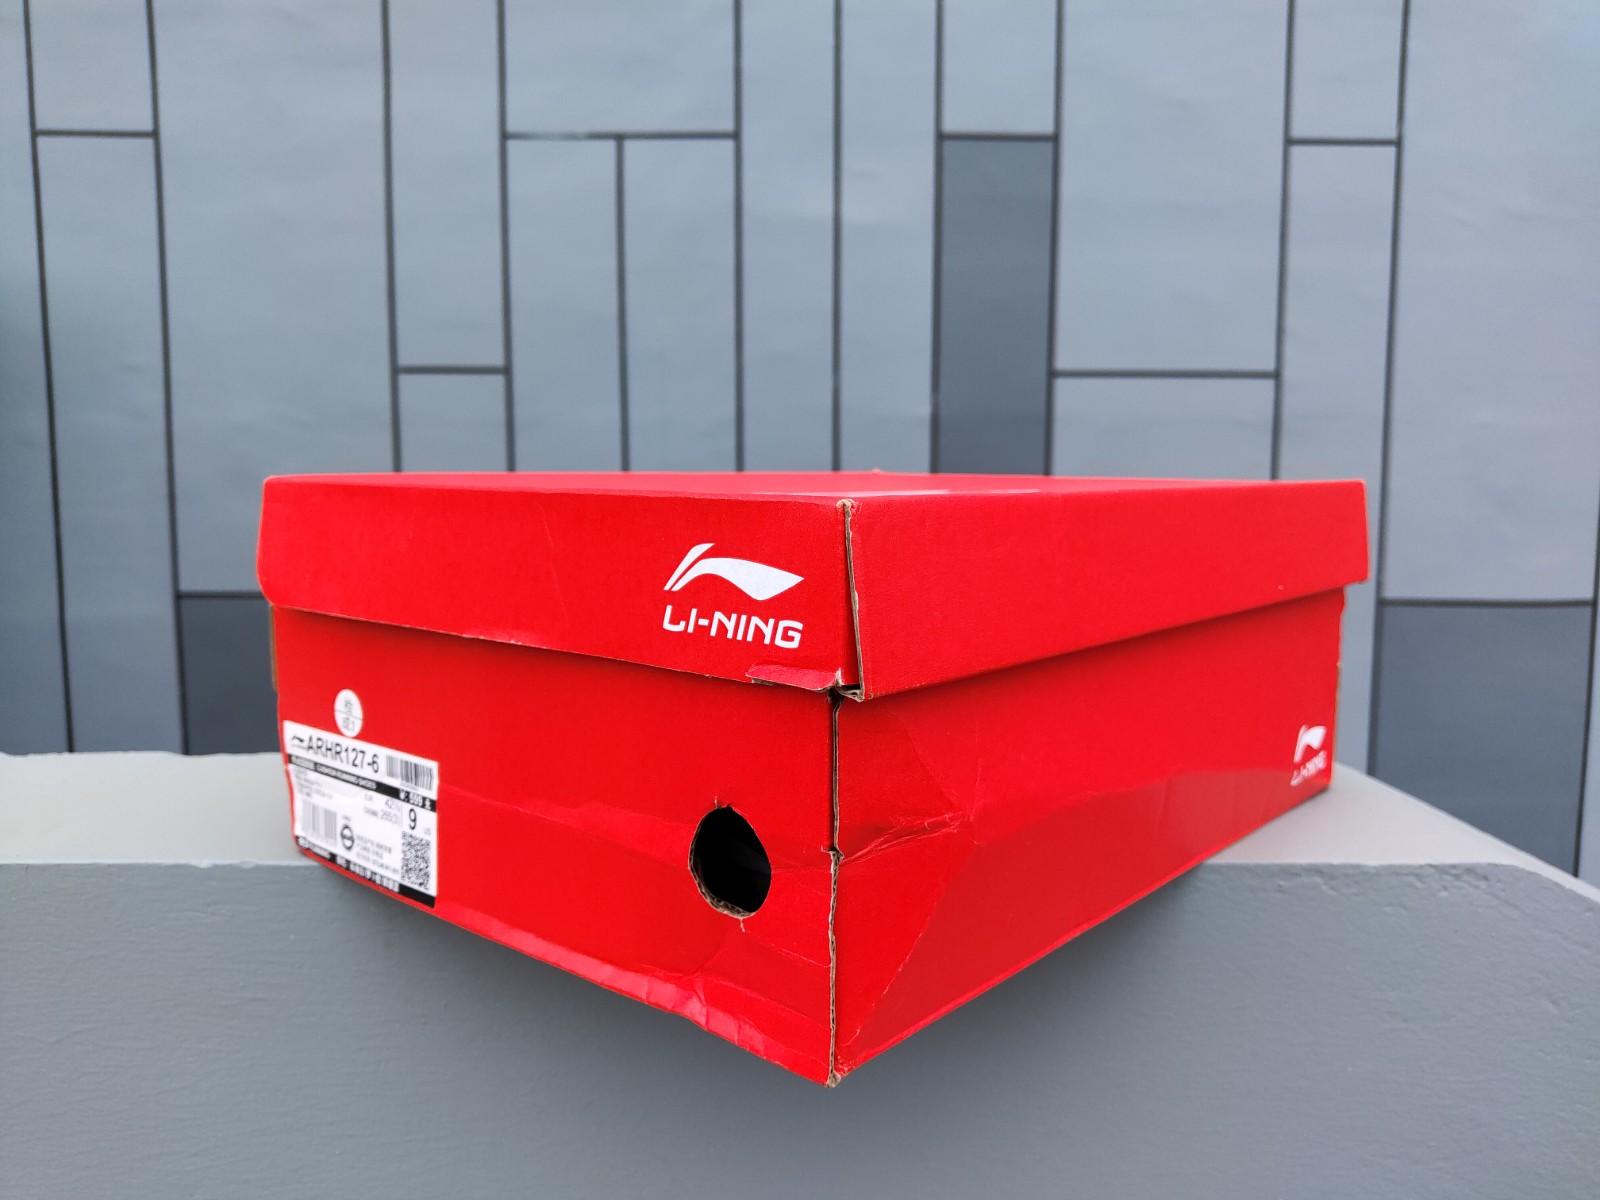 鞋盒祖传大气的李宁logo红鞋盒已经沿用多年,体积大,硬度高